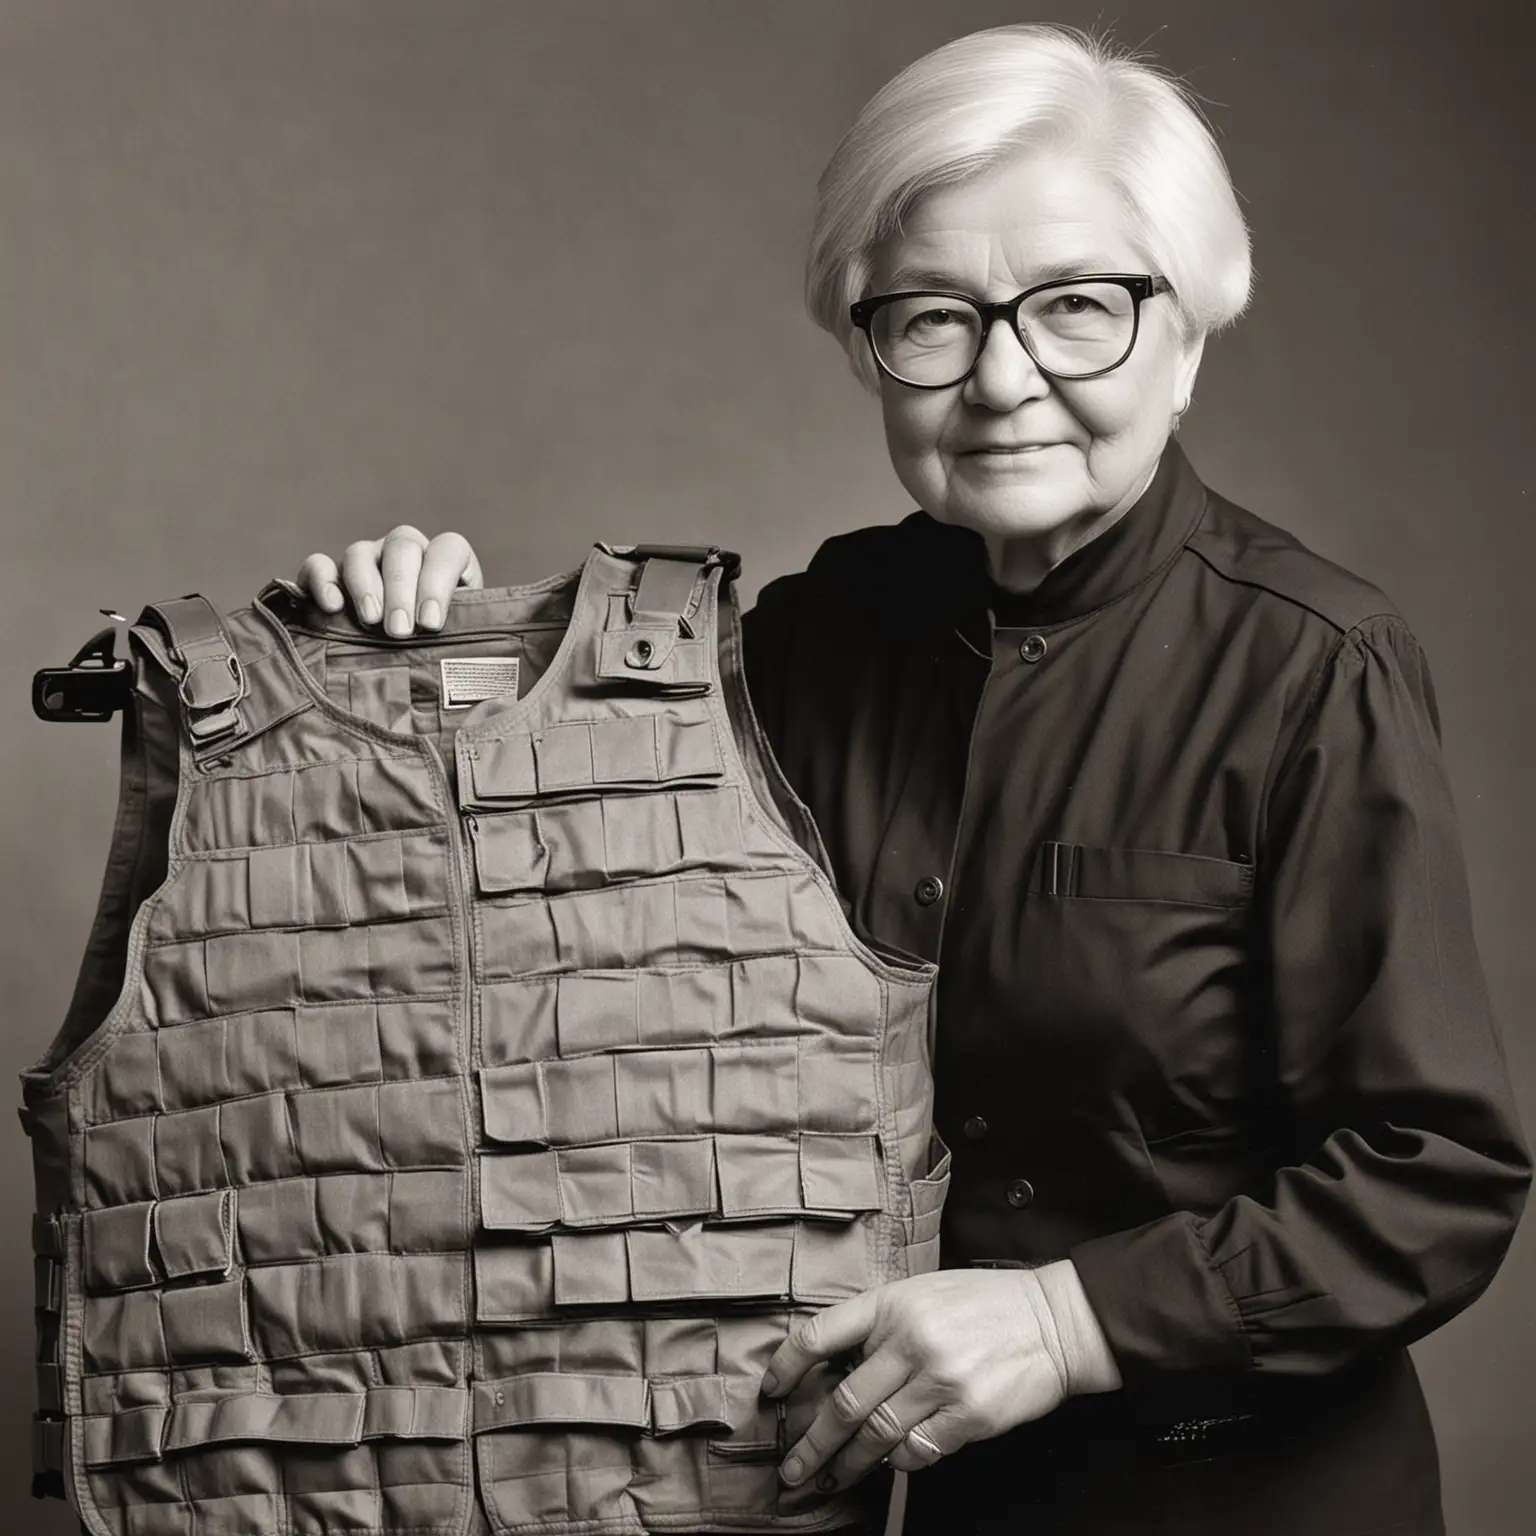 
Stephanie Kwolek inventing bullet proof vest 
